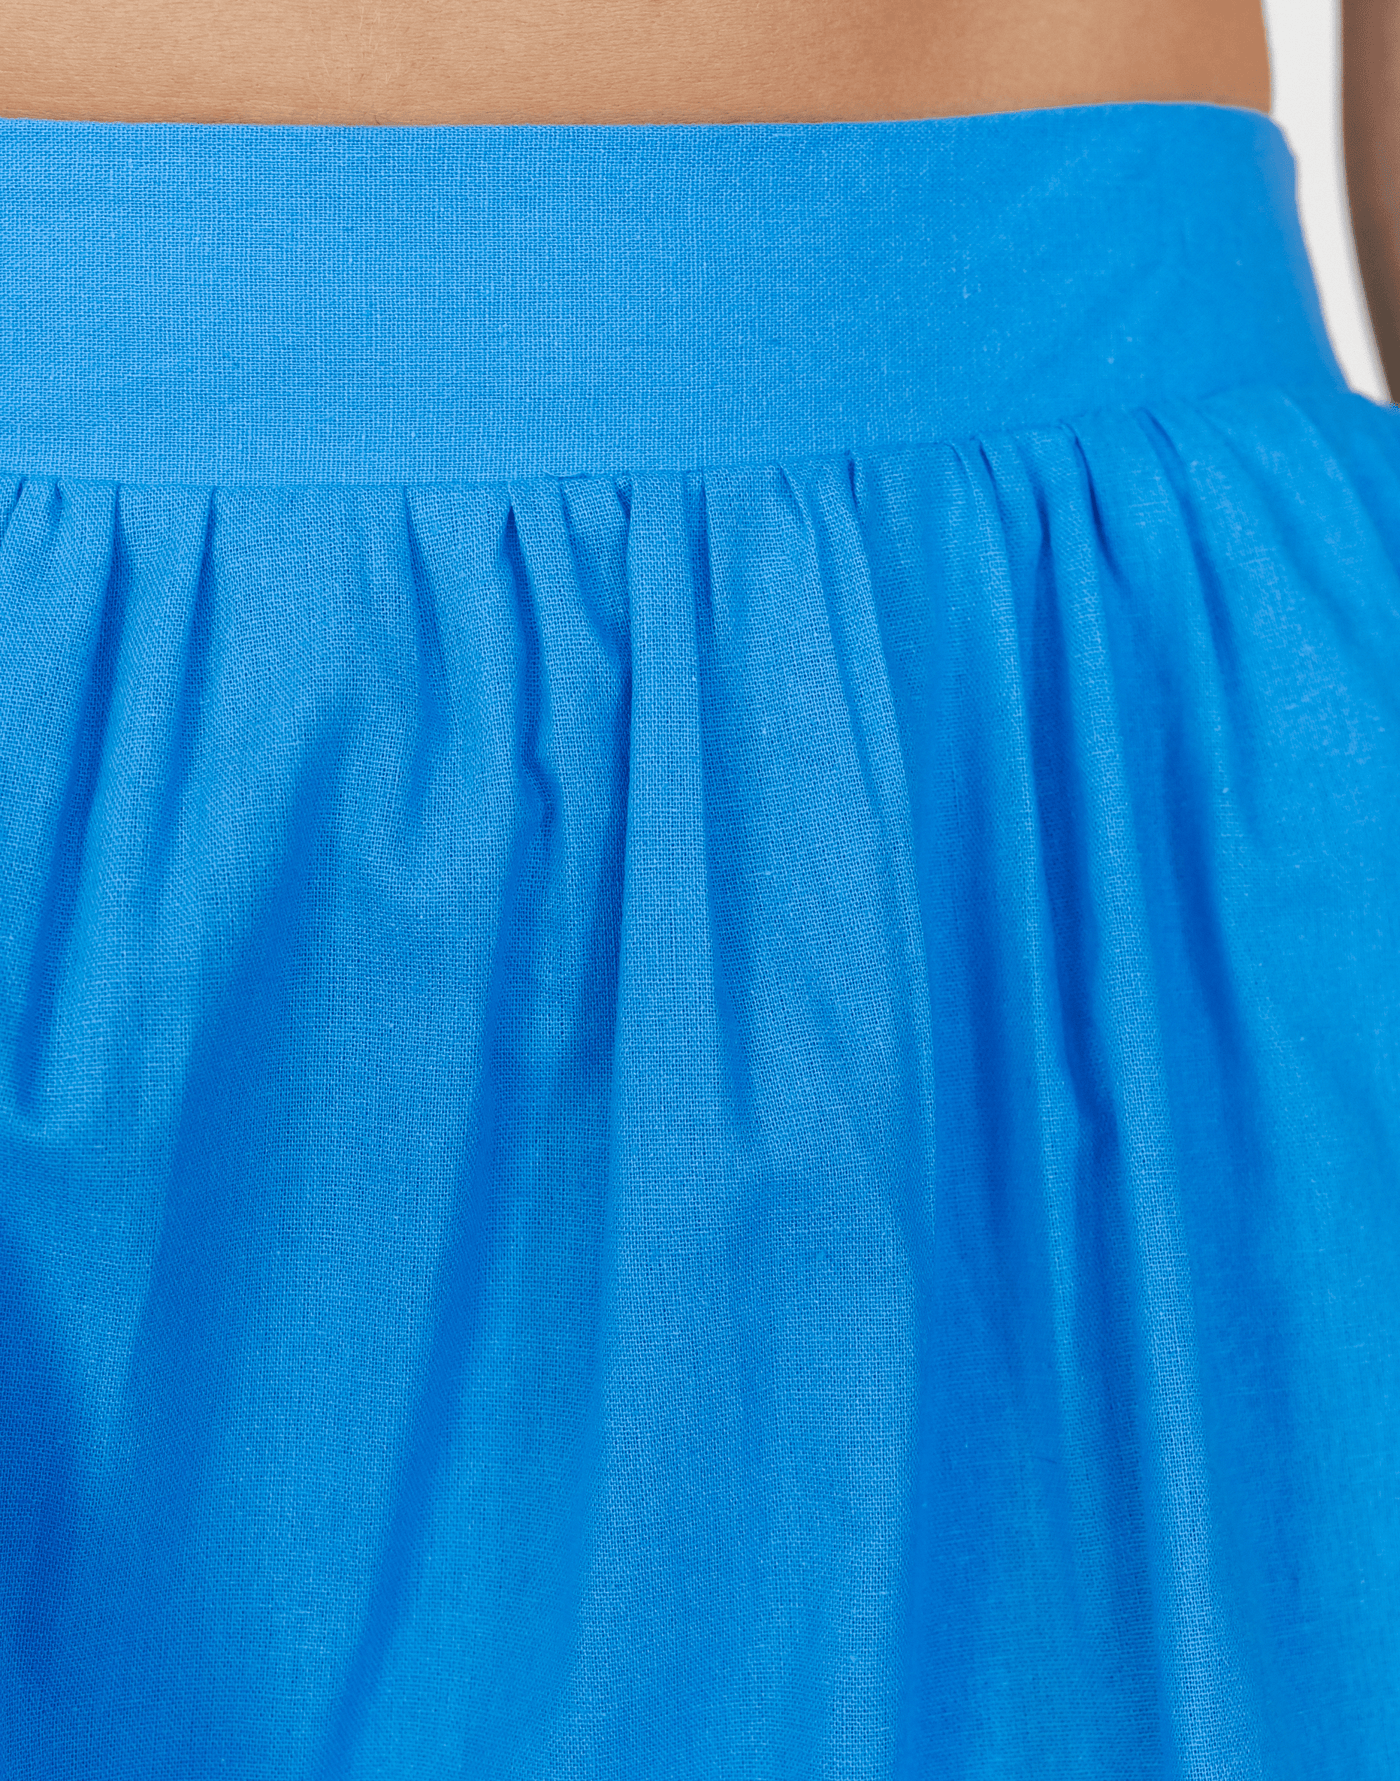 Brooks Mini Skirt (Blue) - Gathered Short Skirt - Women's Skirt - Charcoal Clothing